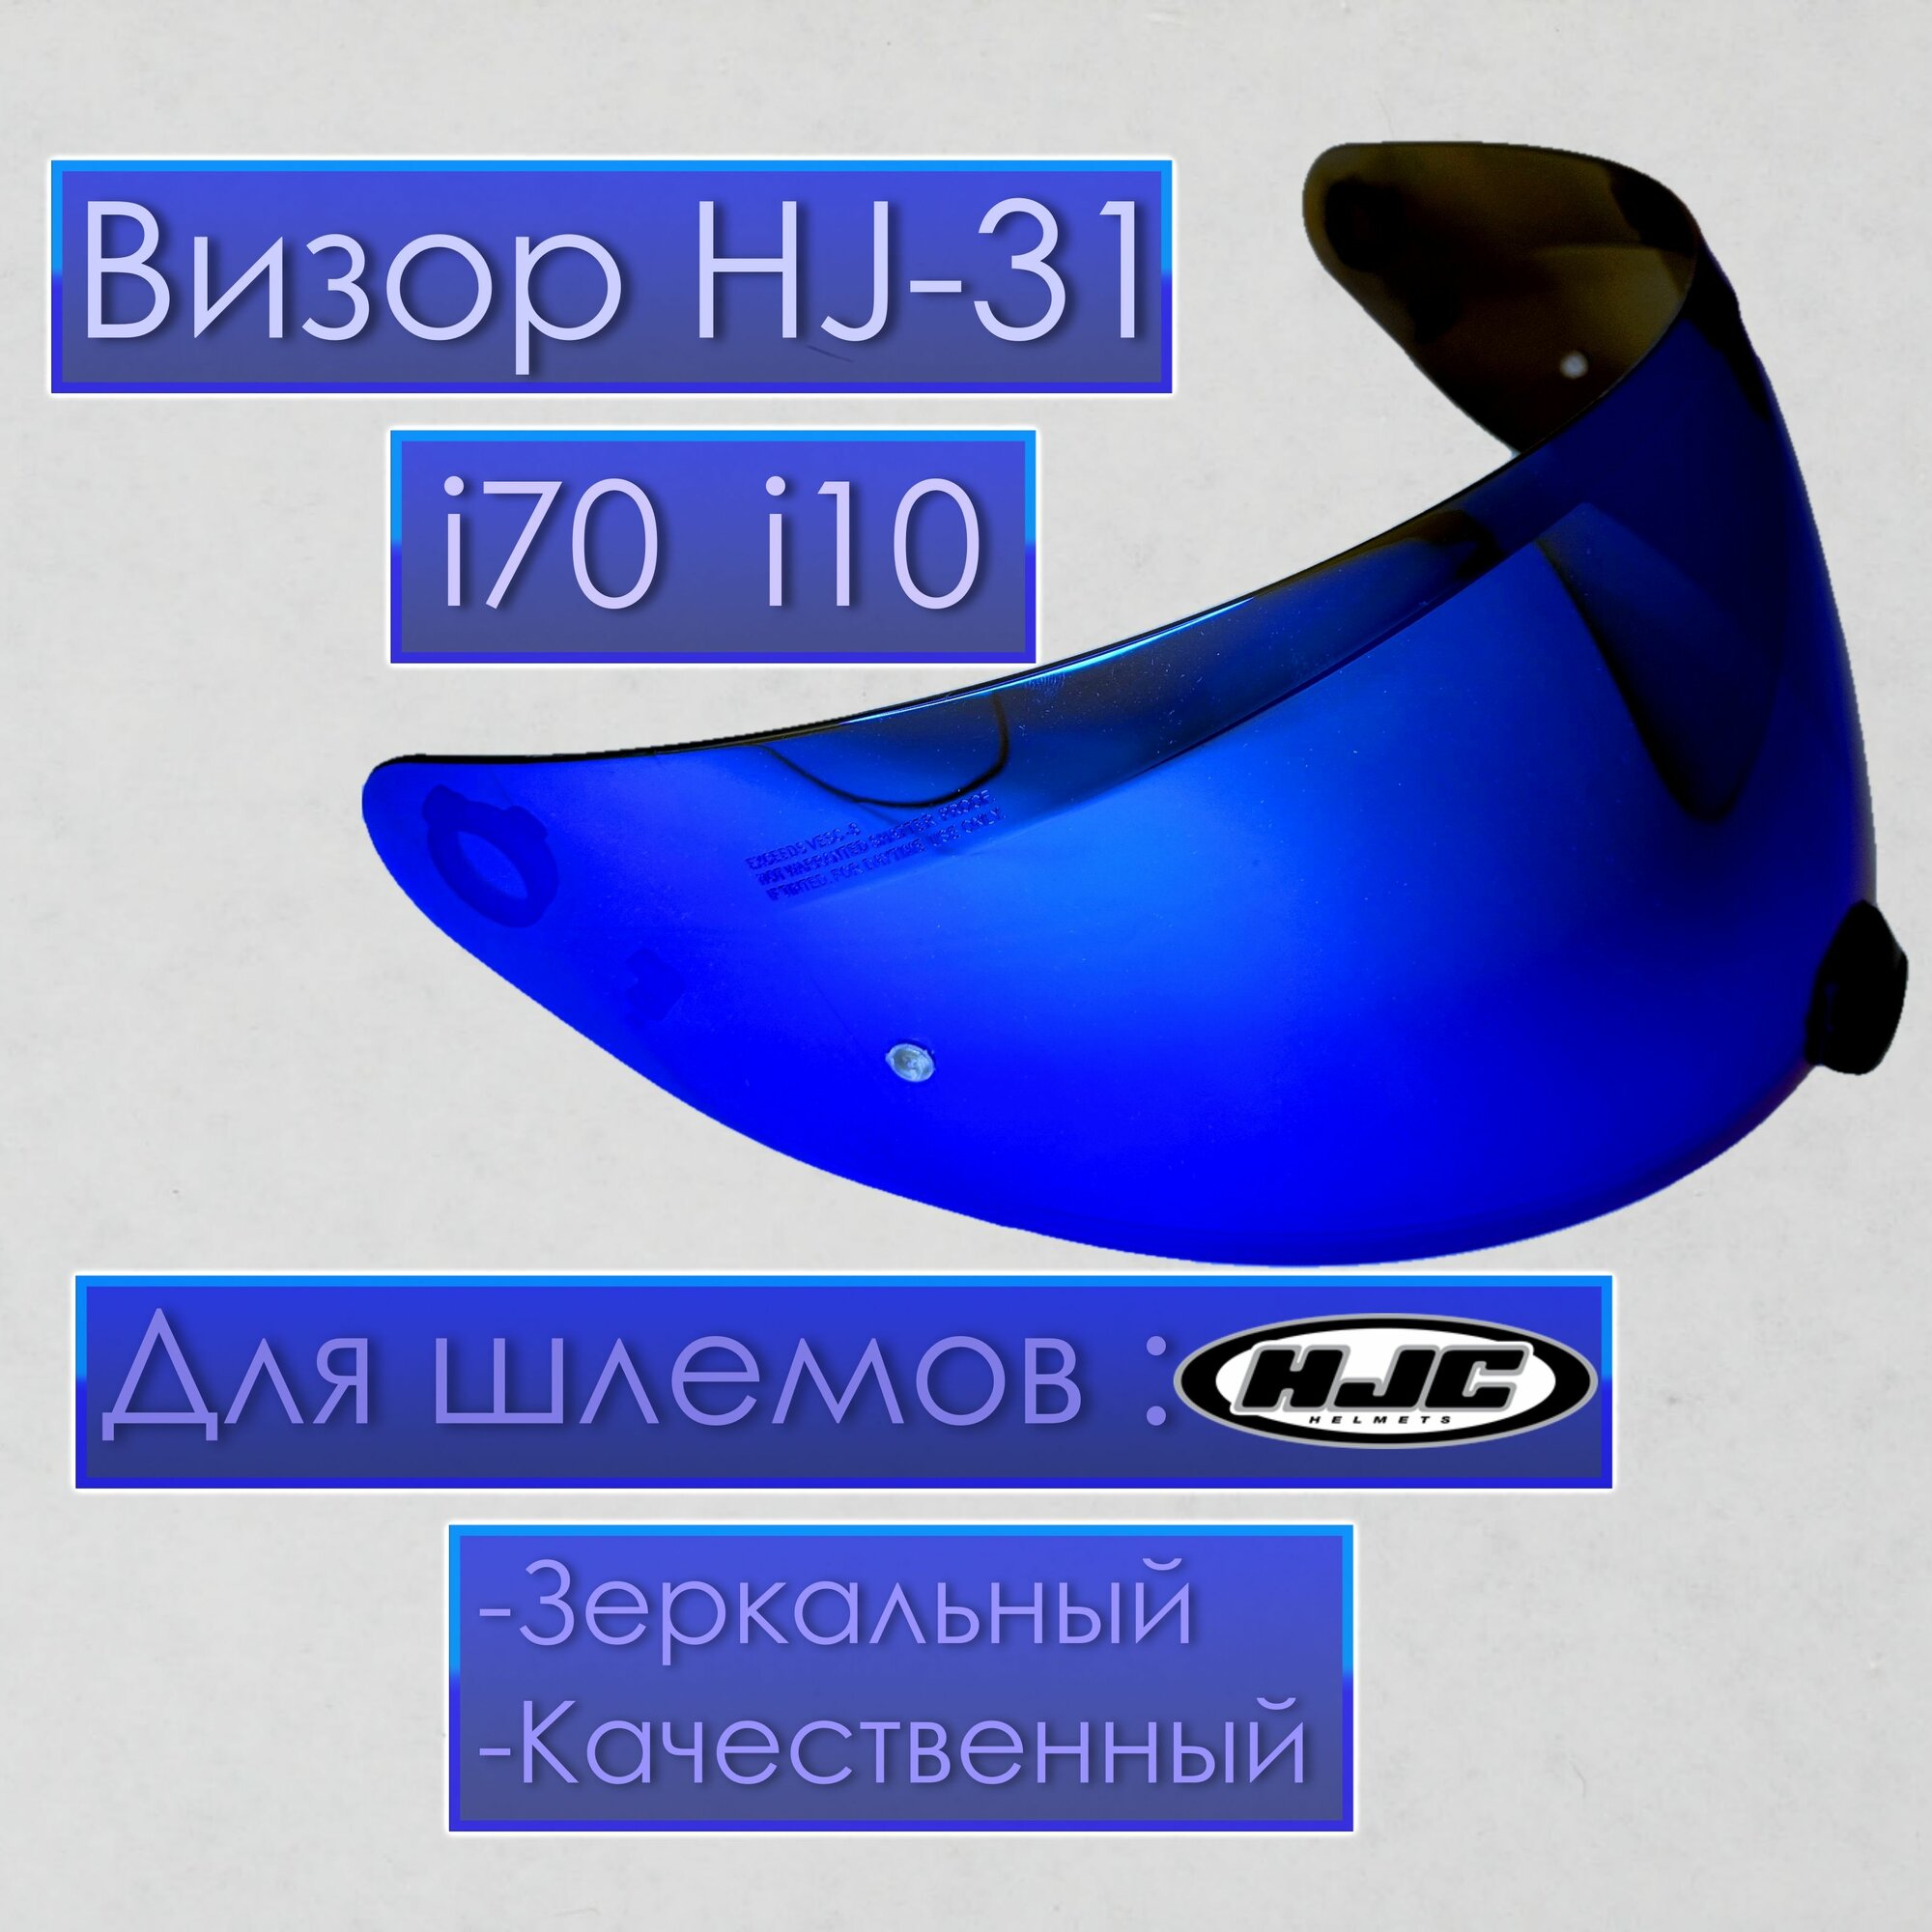 Визор к HJC HJ-31 Для шлемов i70 i10 Зеркальный Синий